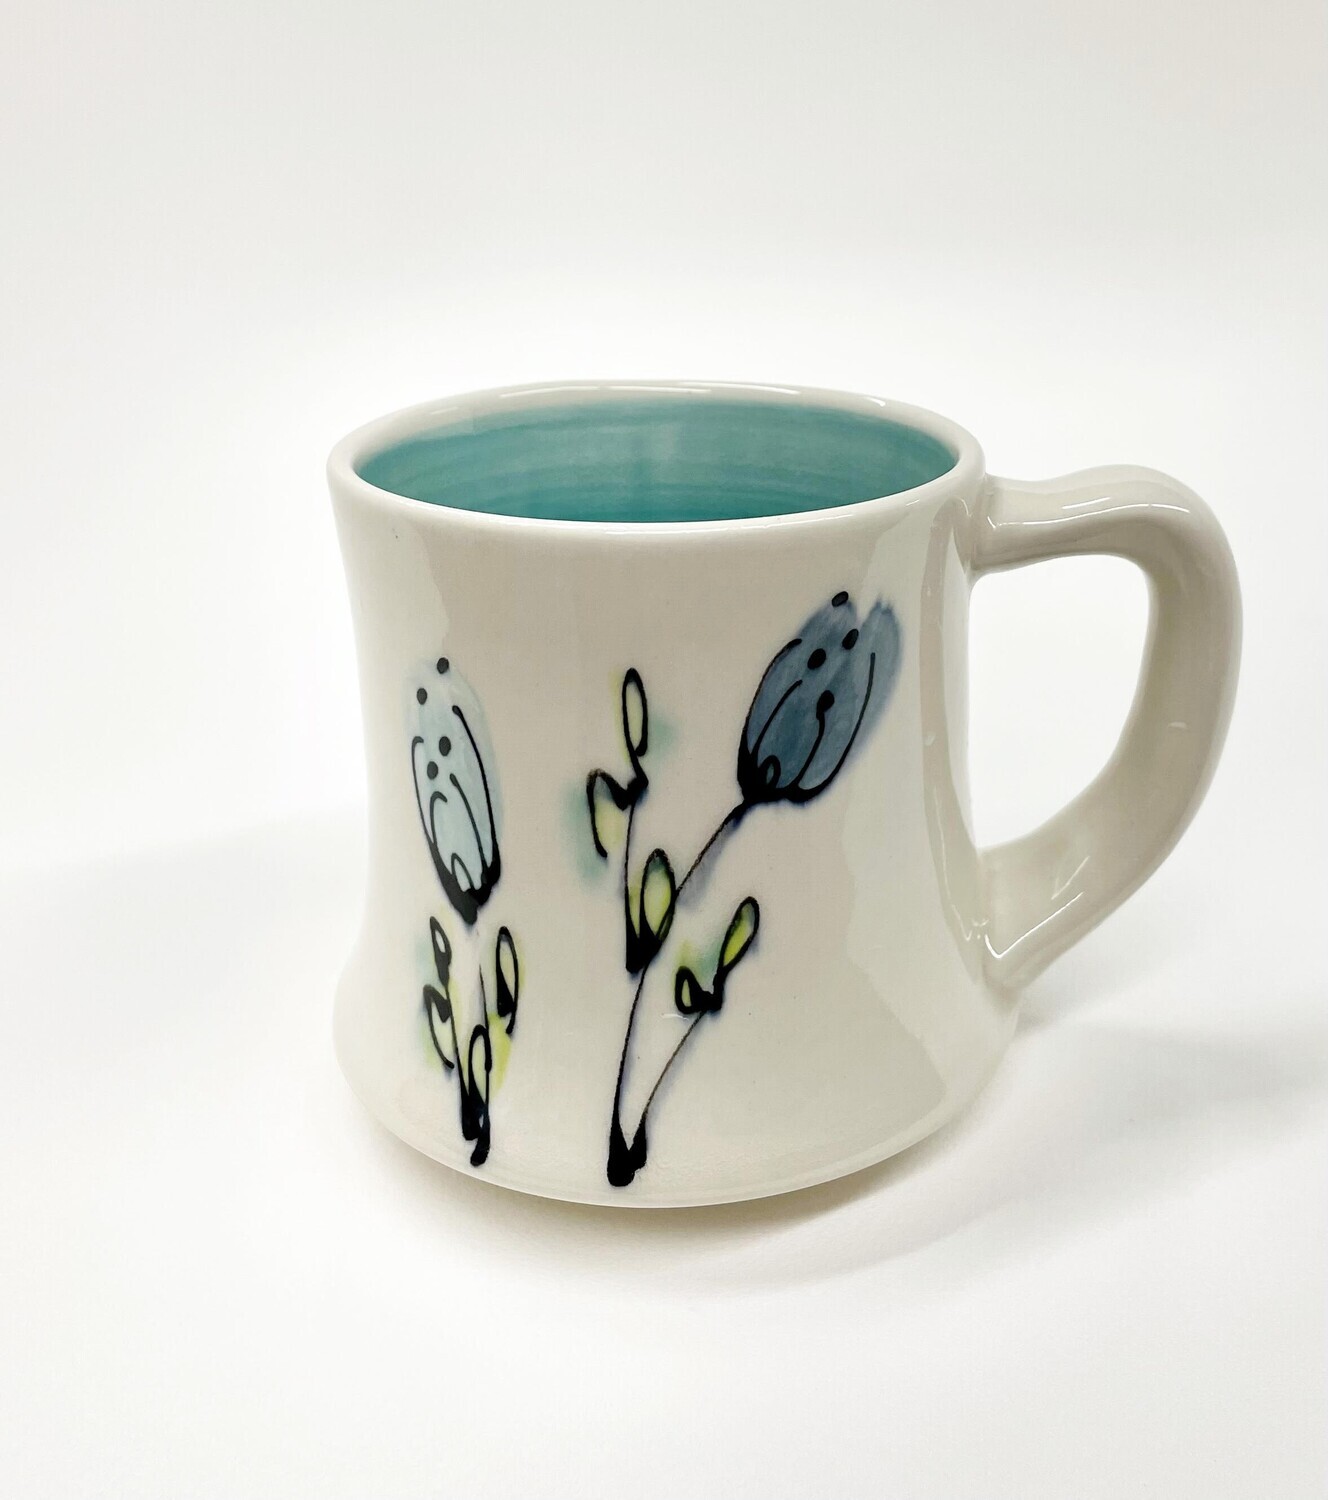 Blue Floral Mug- Rachel de Conde